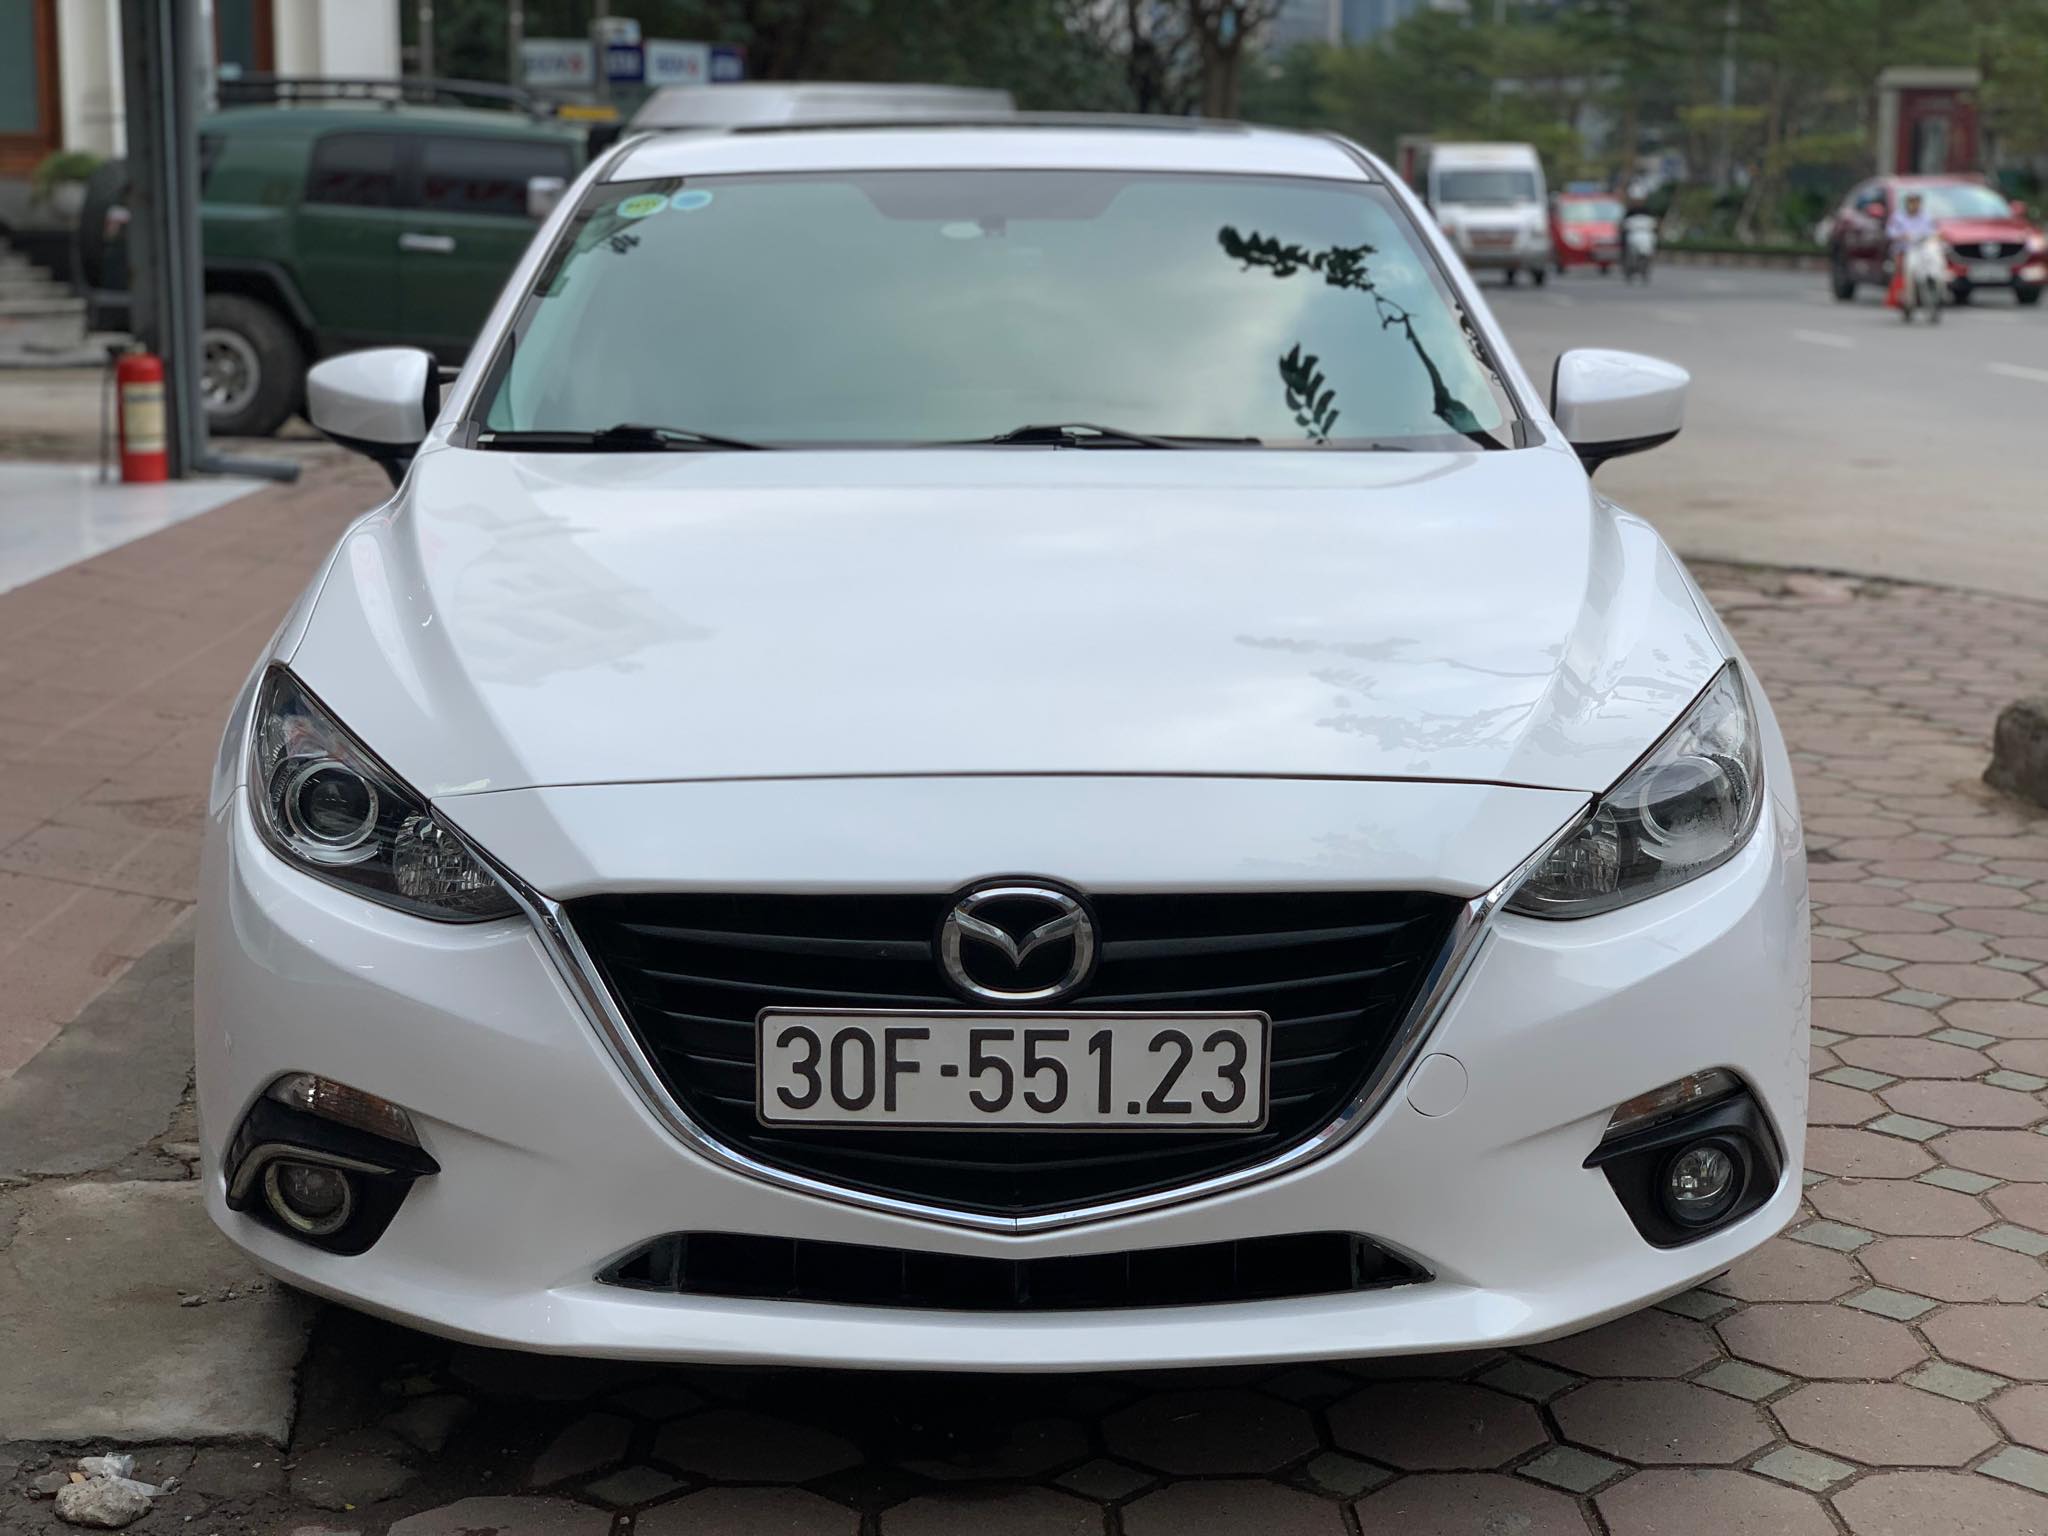 Bán ô tô Mazda 3 Hatchback 15AT 2015  Đỏ Xe cũ Số tự động tại Hà Nội   otoxehoicom  Mua bán Ô tô Xe hơi Xe cũ